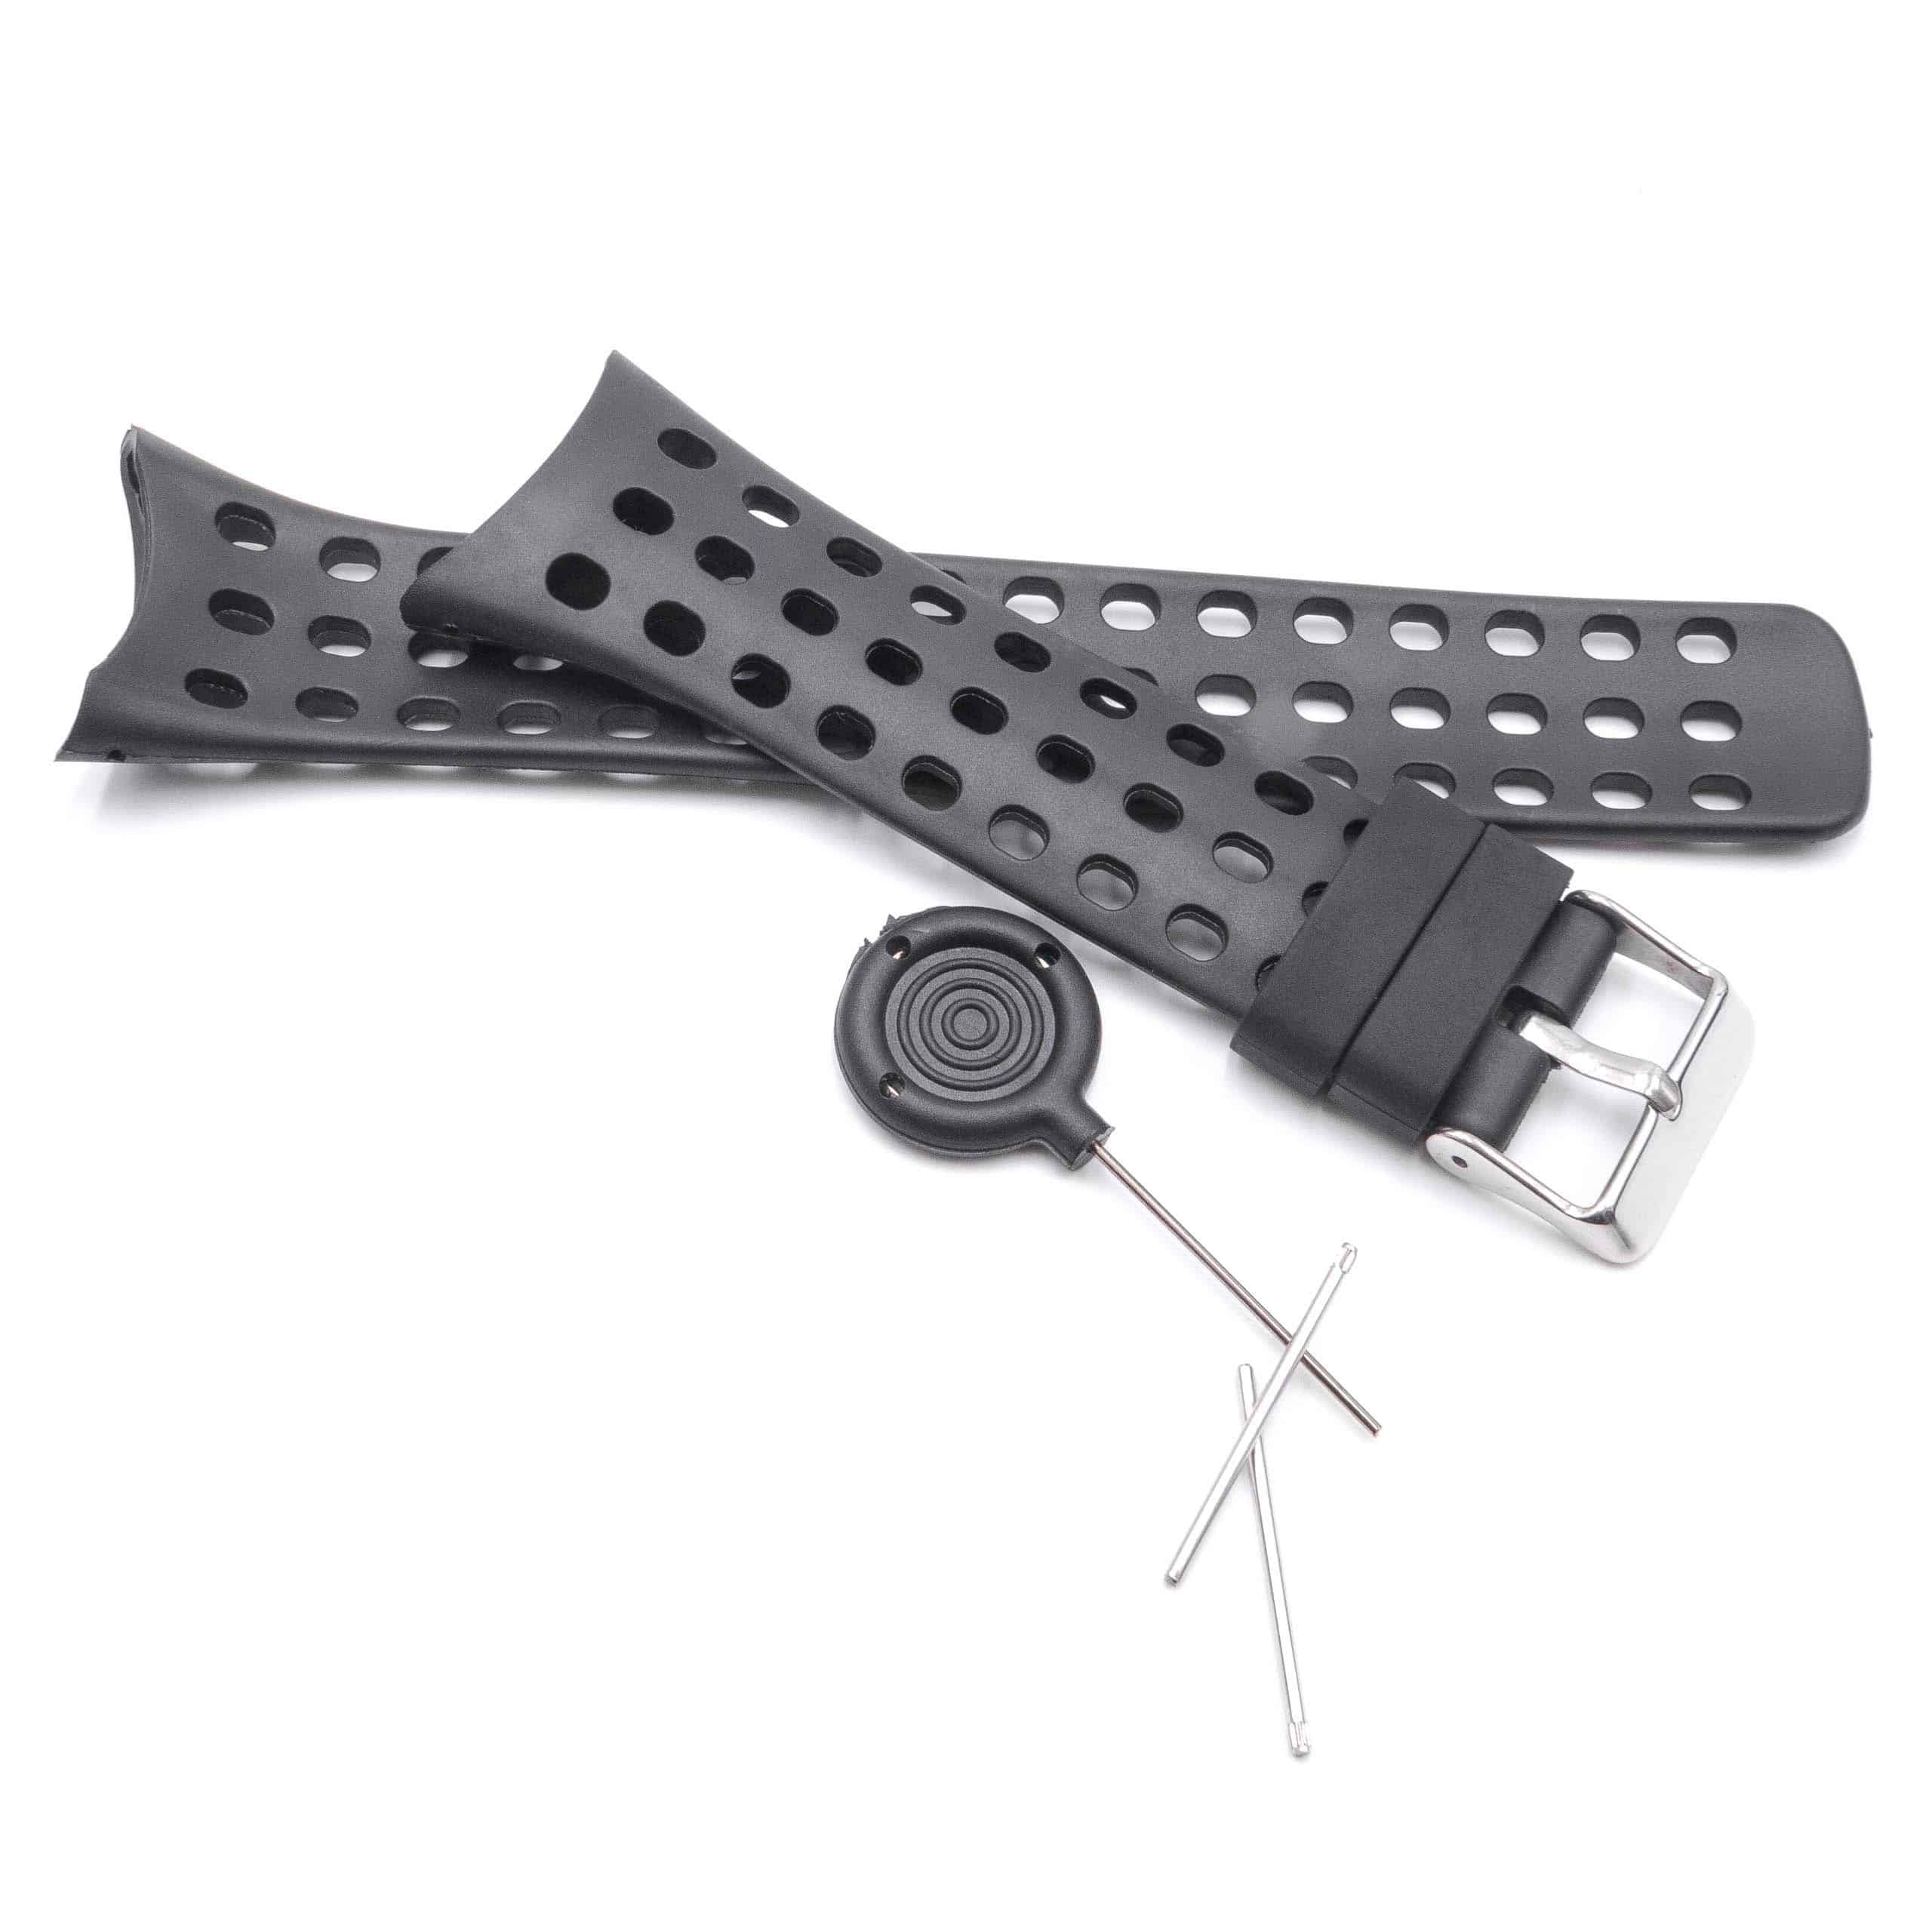 cinturino uomo per Suunto Smartwatch - 12,6 + 9,5 cm lunghezza, 20mm ampiezza, nero